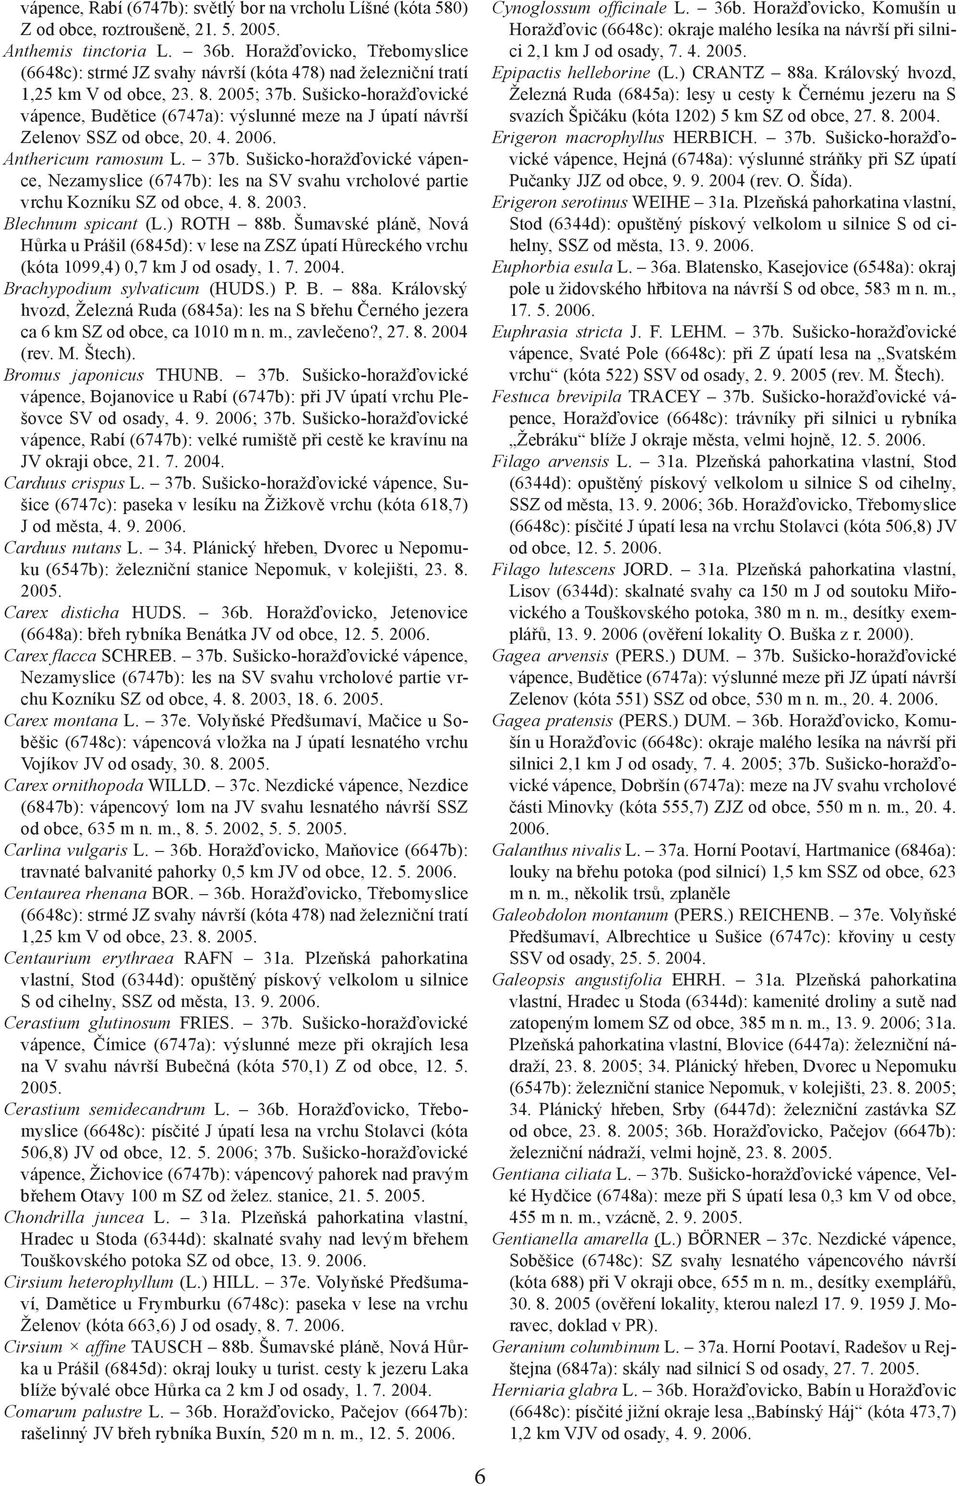 Sušicko-horažďovické vápence, Budětice (6747a): výslunné meze na J úpatí návrší Zelenov SSZ od obce, 20. 4. 2006. Anthericum ramosum L. 37b.